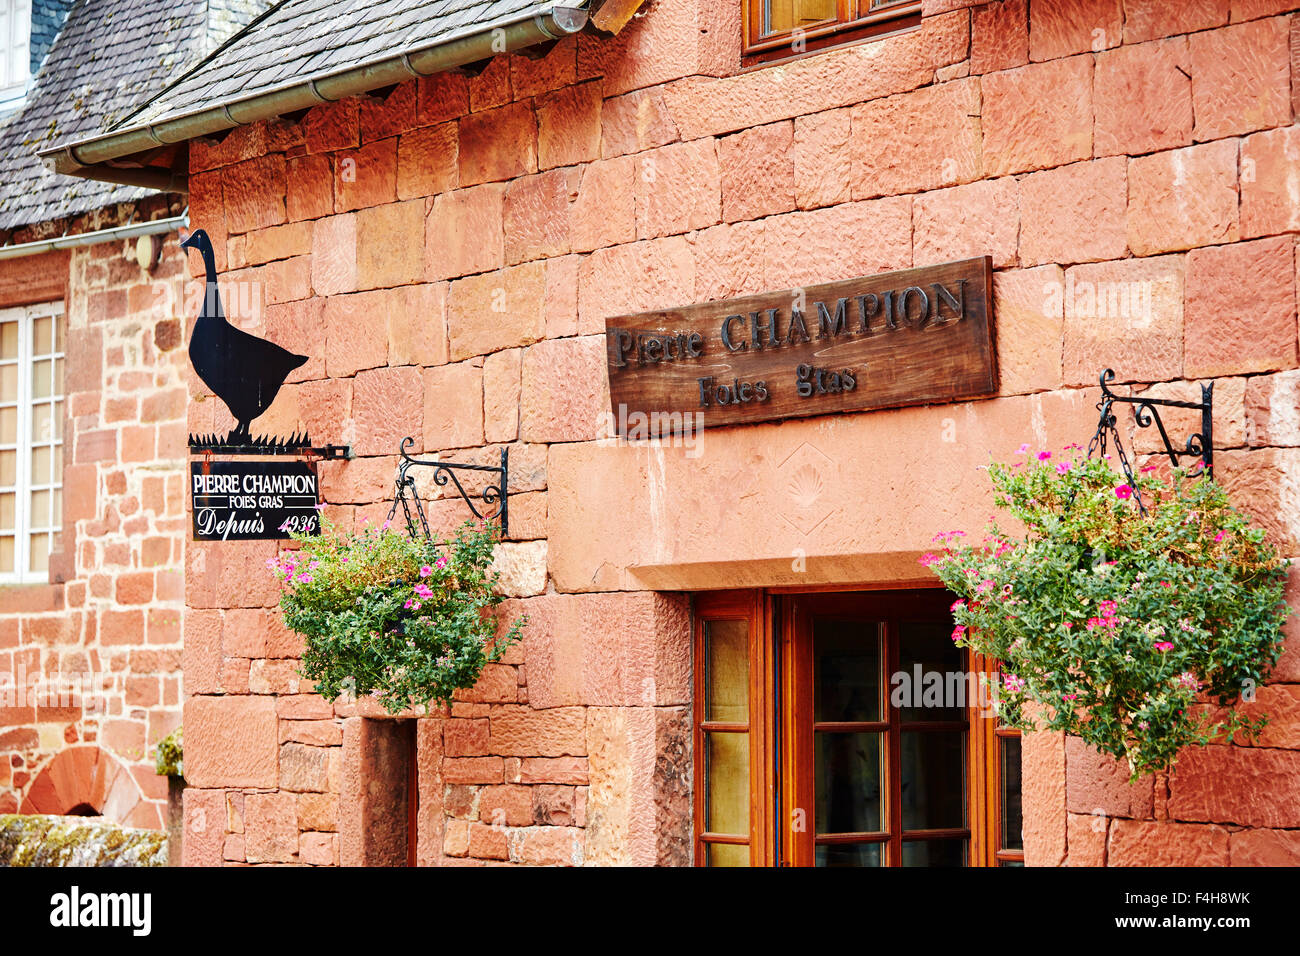 Pierre Champion foie gras shop in Collonges-la-Rouge, Correze, Limousin, France. Stock Photo